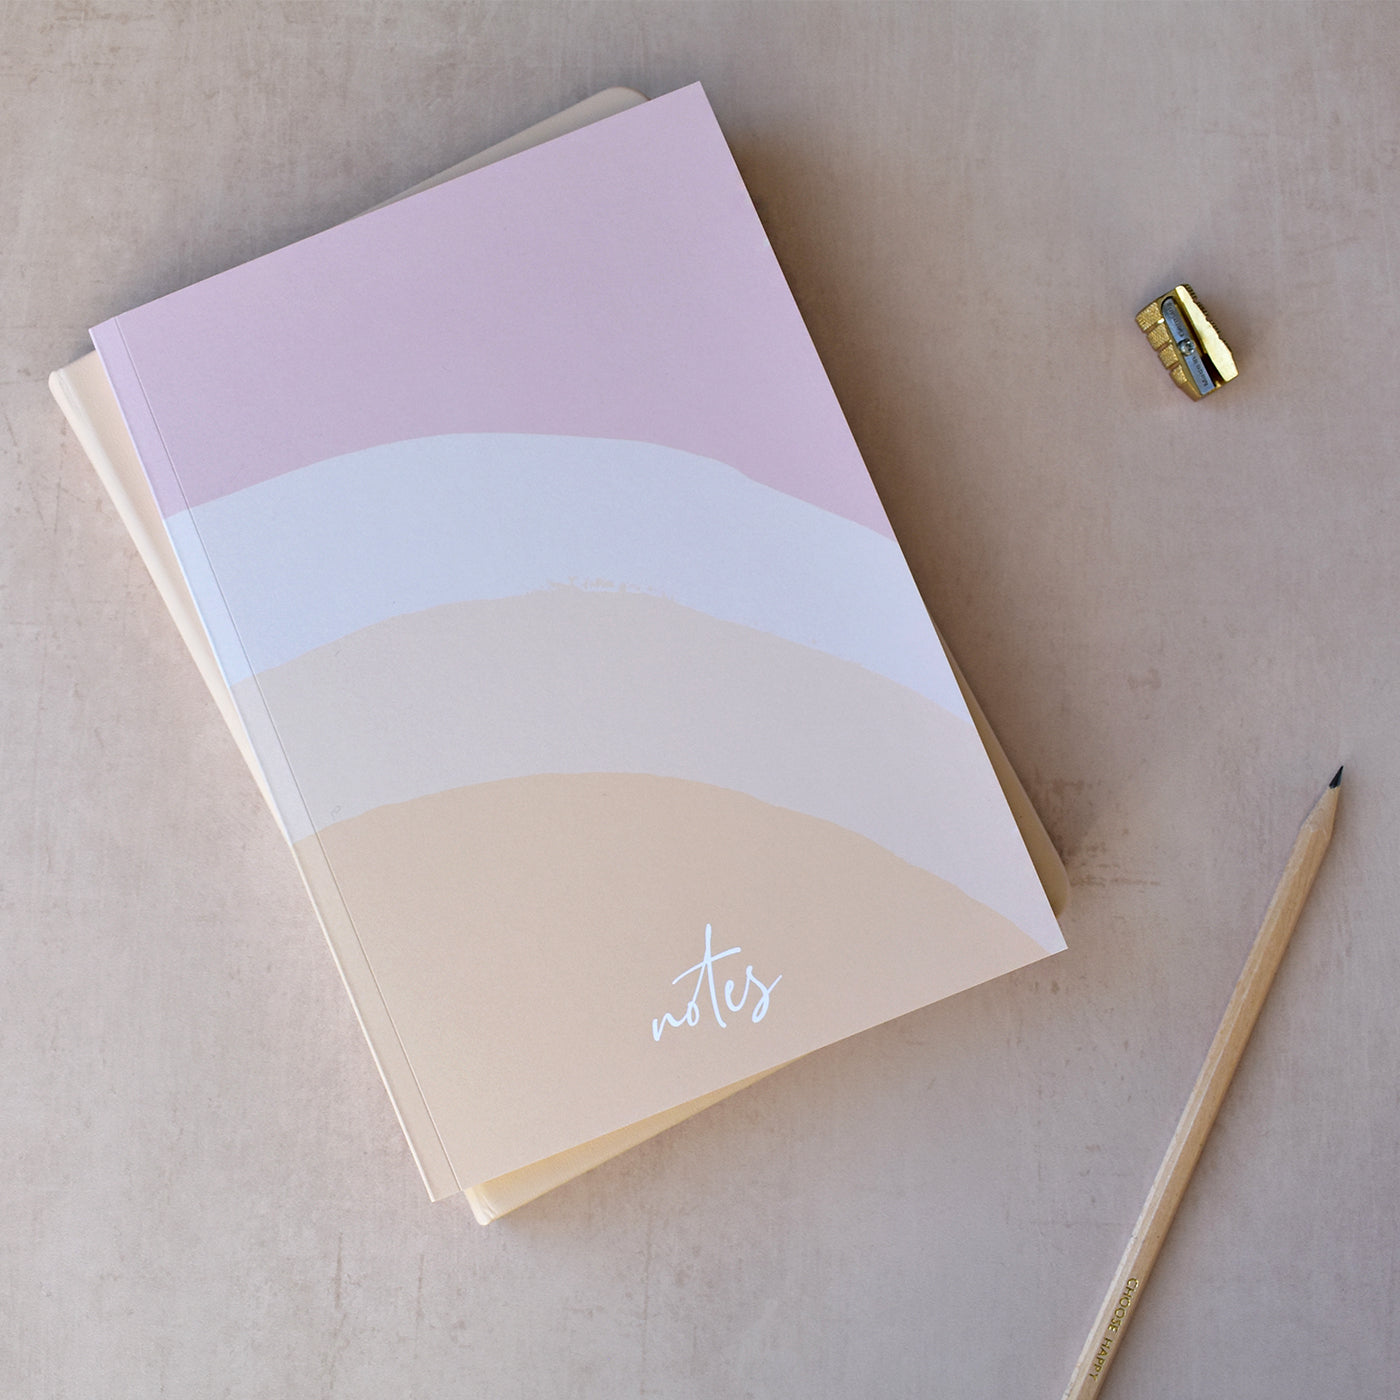 A5 Sunset Notebook